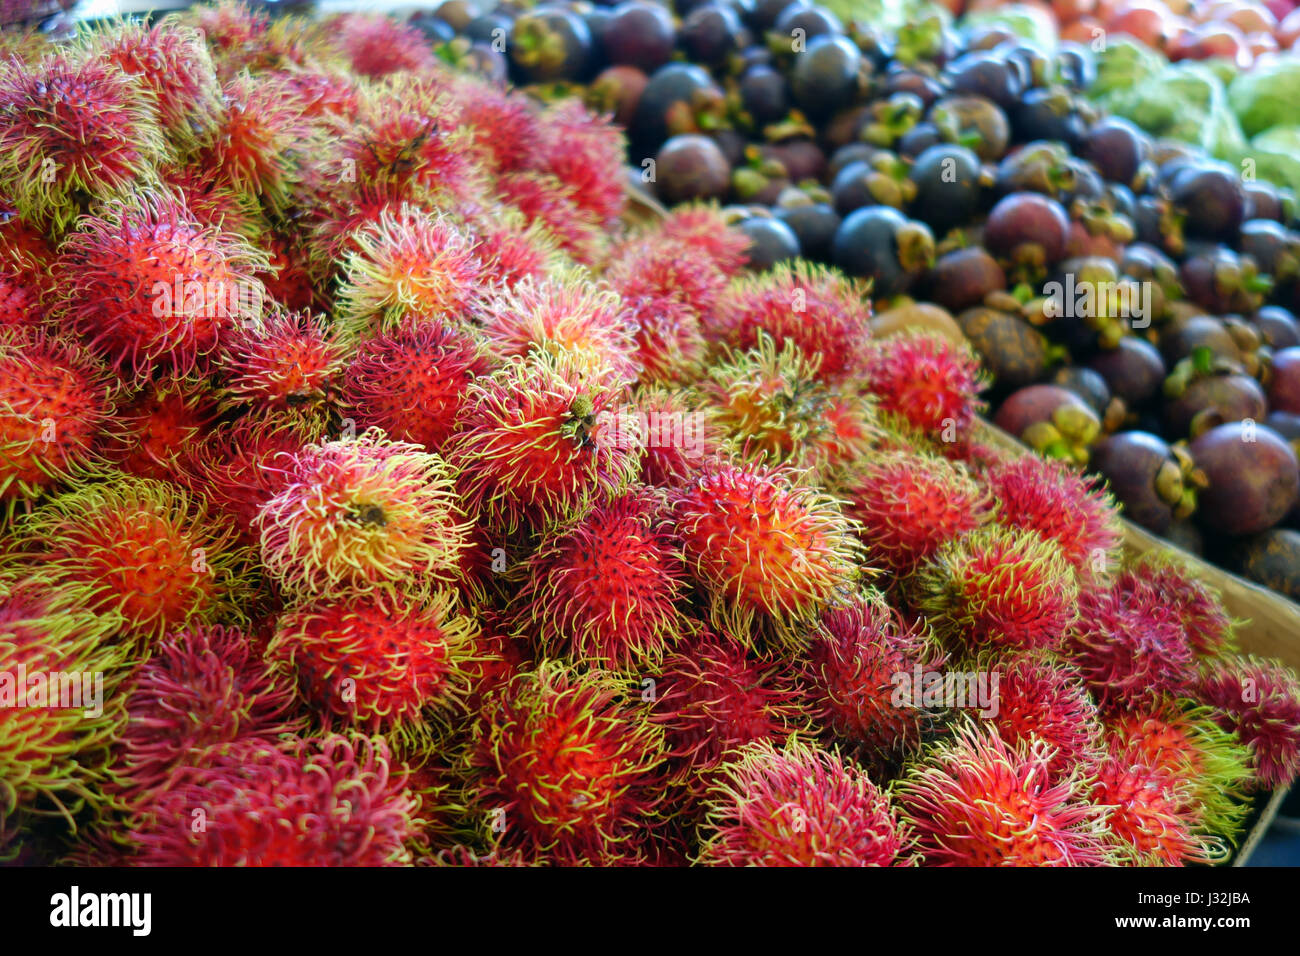 Los rambutanes, mangostanes y otras frutas tropicales en el Rusty's Markets, Cairns, Queensland, Australia Foto de stock